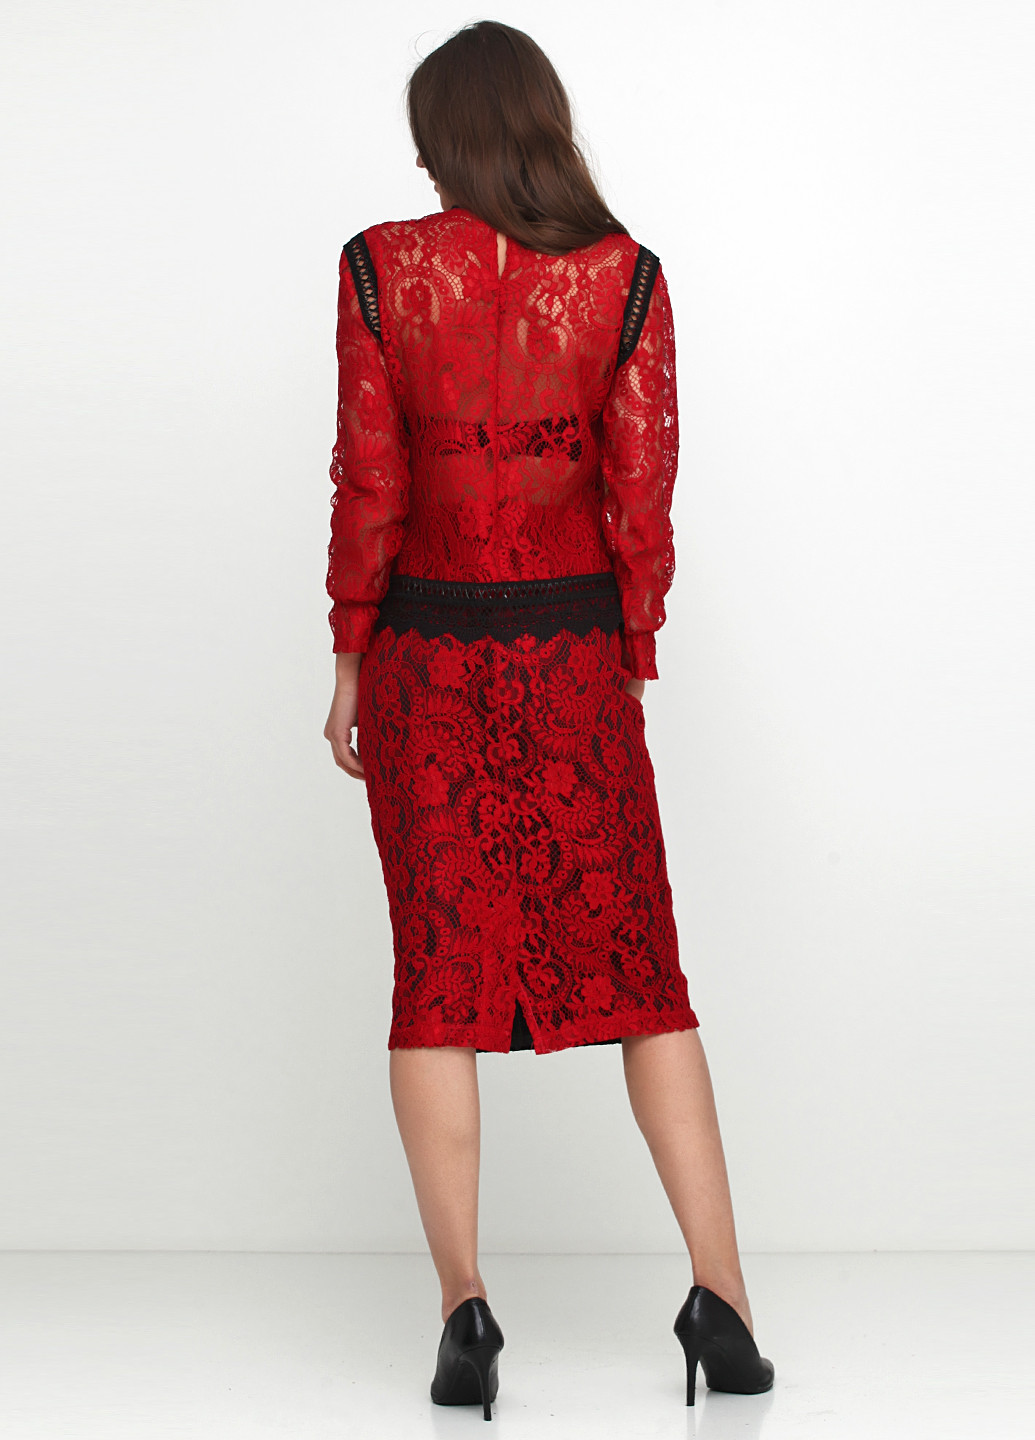 Костюм (блуза, юбка) Y-TWO юбочный орнамент красный деловой